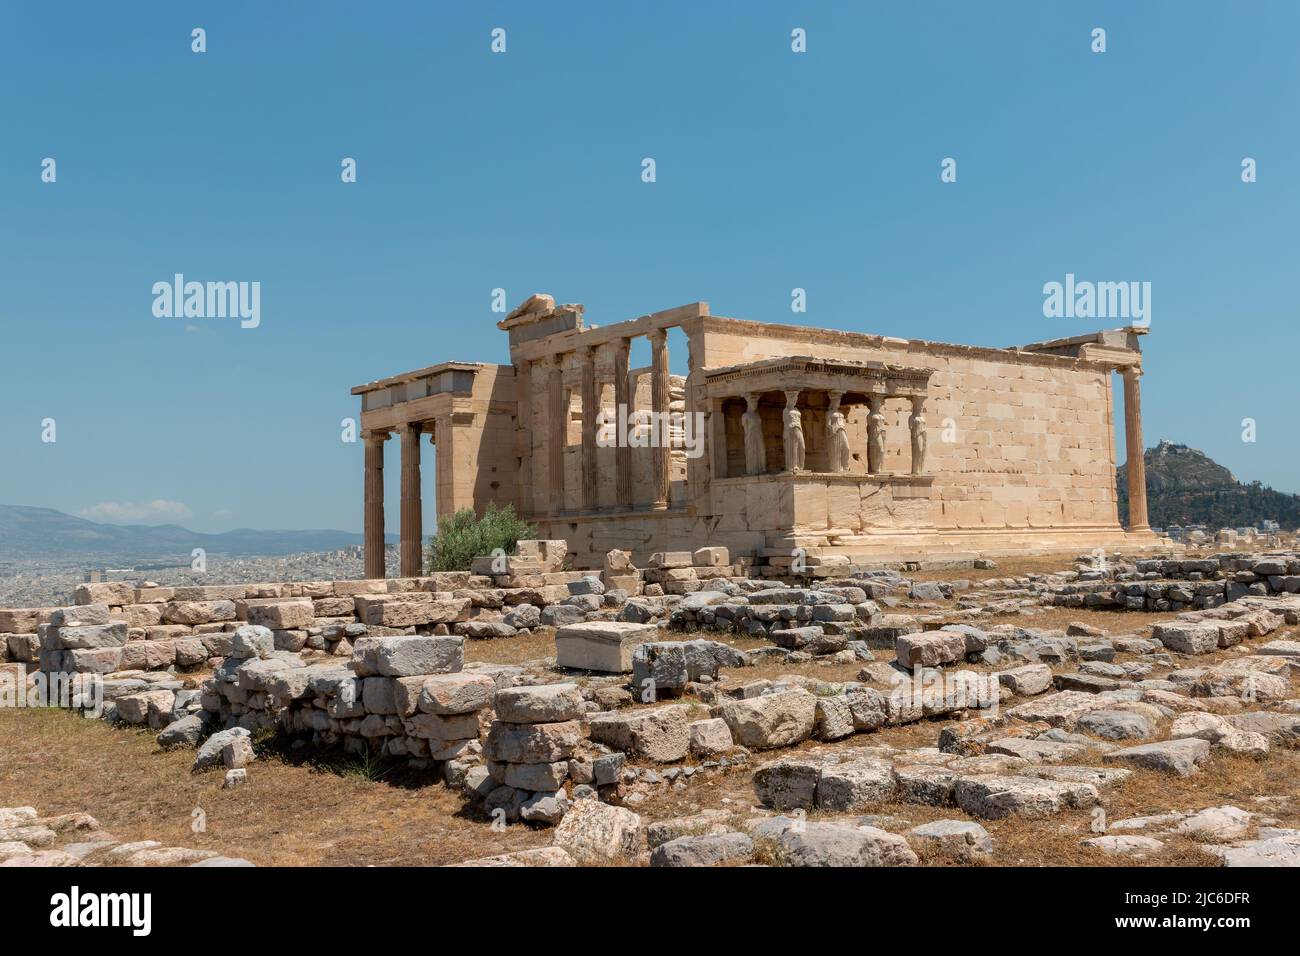 The Erechtheion of the Acropolis, Athens. Stock Photo